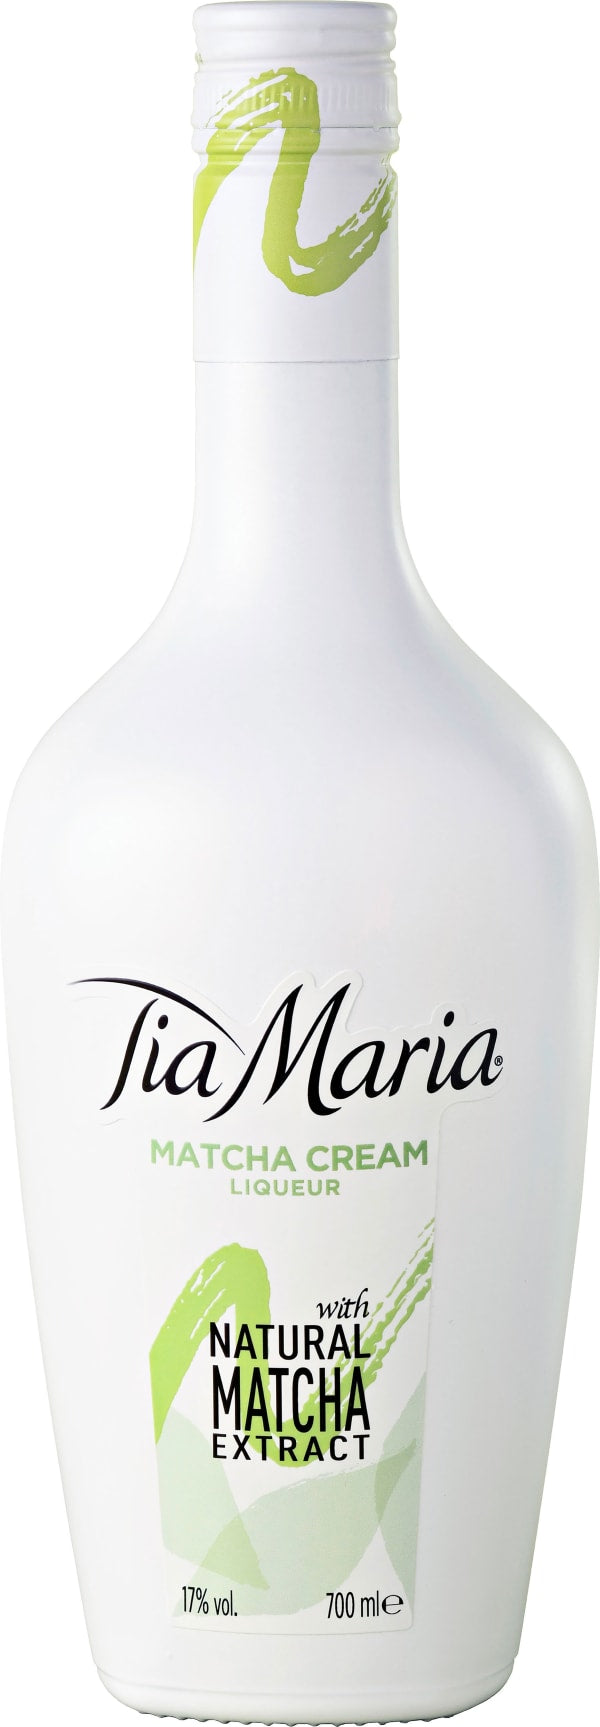 Tia Maria Matcha Cream Liqueur 17%